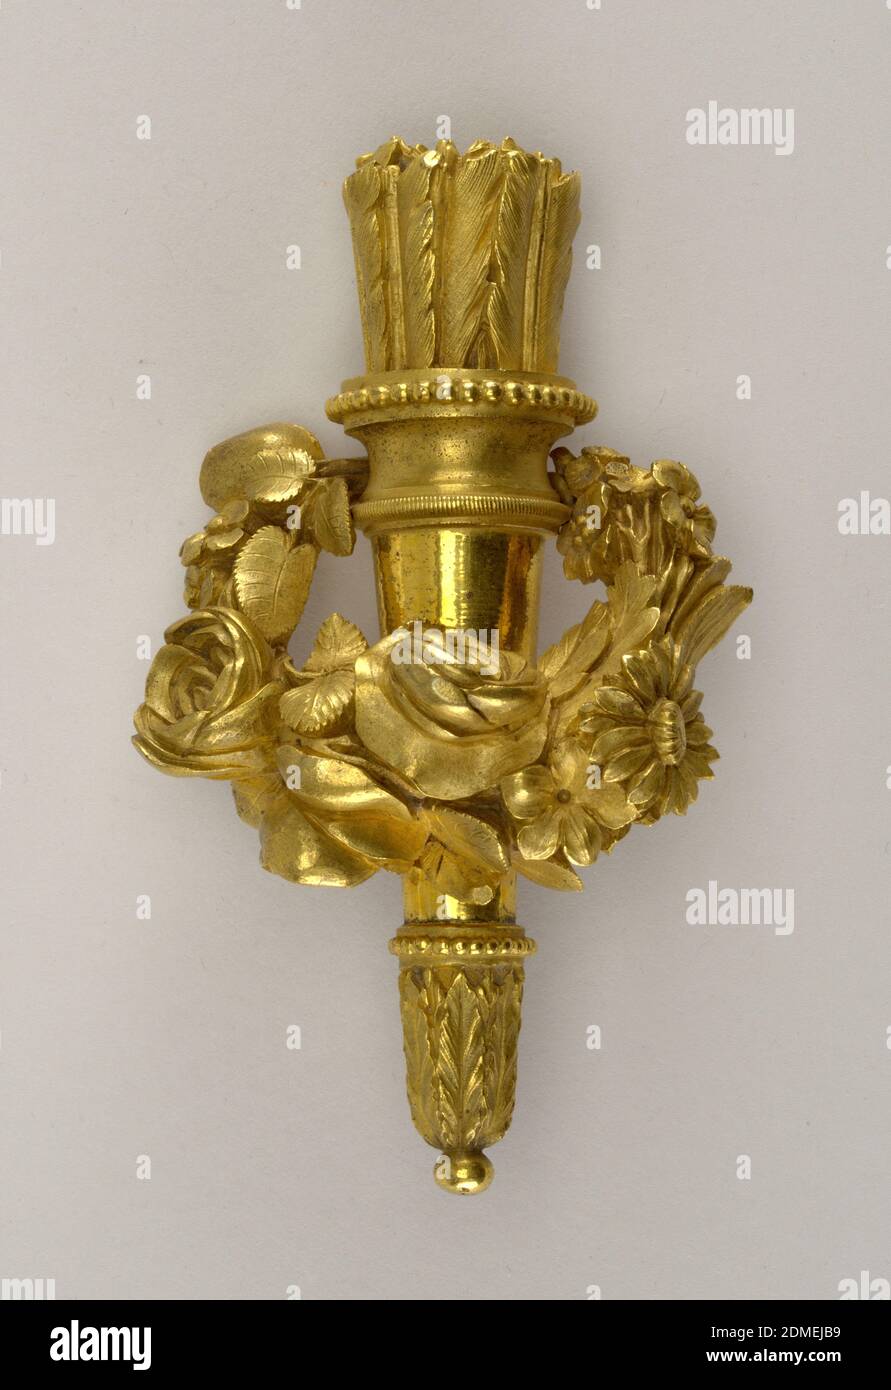 Monture, bronze, quiver avec flèches, et entouré d'une couronne de fleurs., 1780, travail des métaux, arts décoratifs, monture, montage Banque D'Images